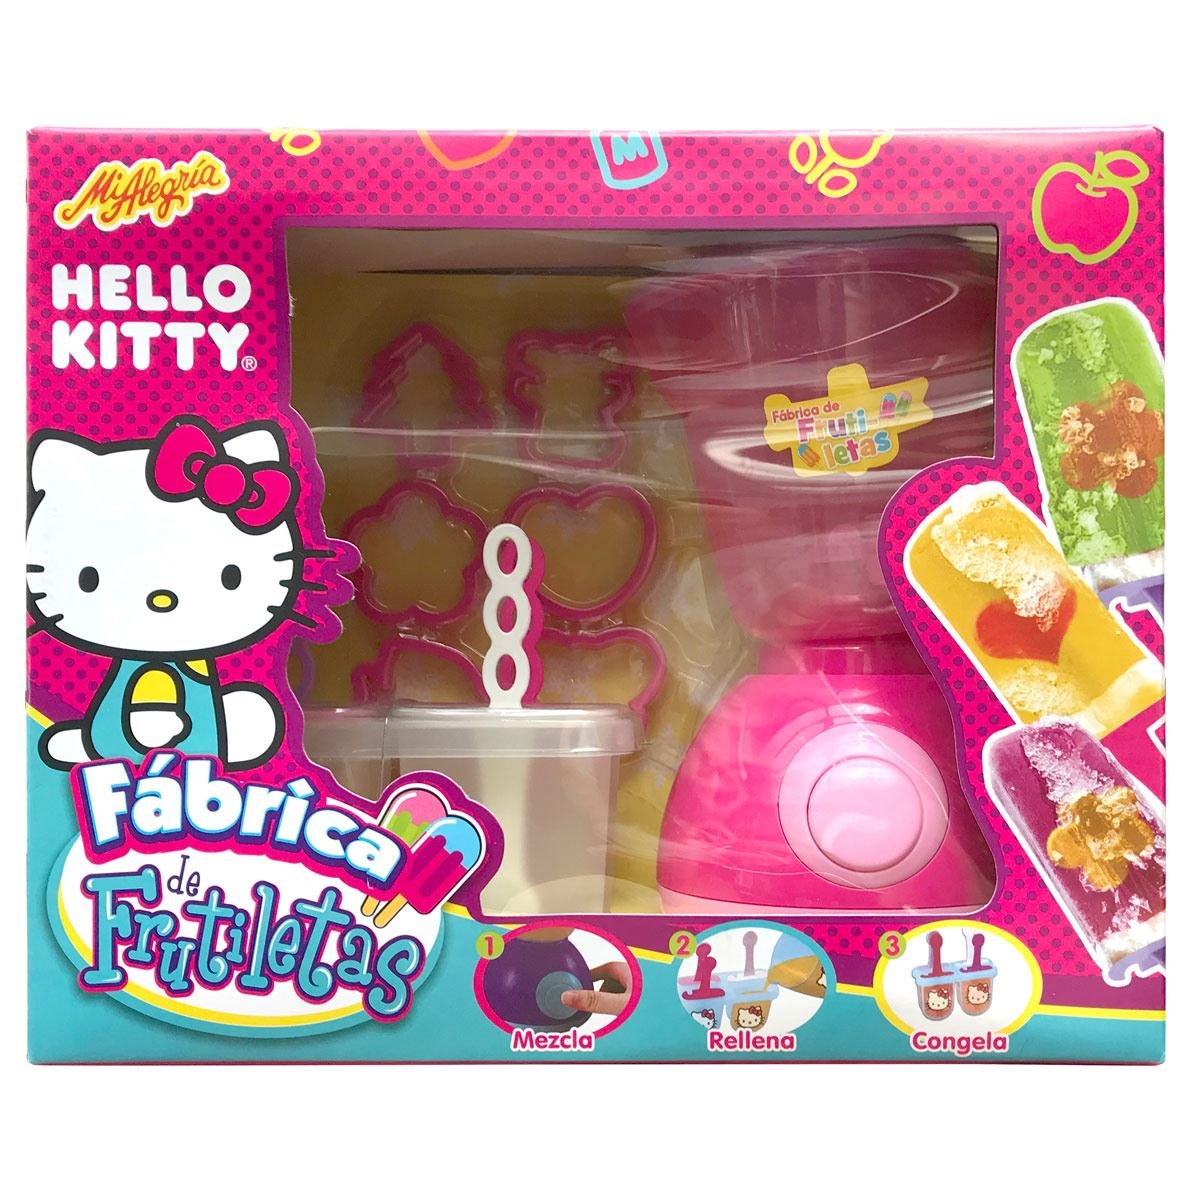 Bolsa merienda de tela - Modelo Hello Kitty